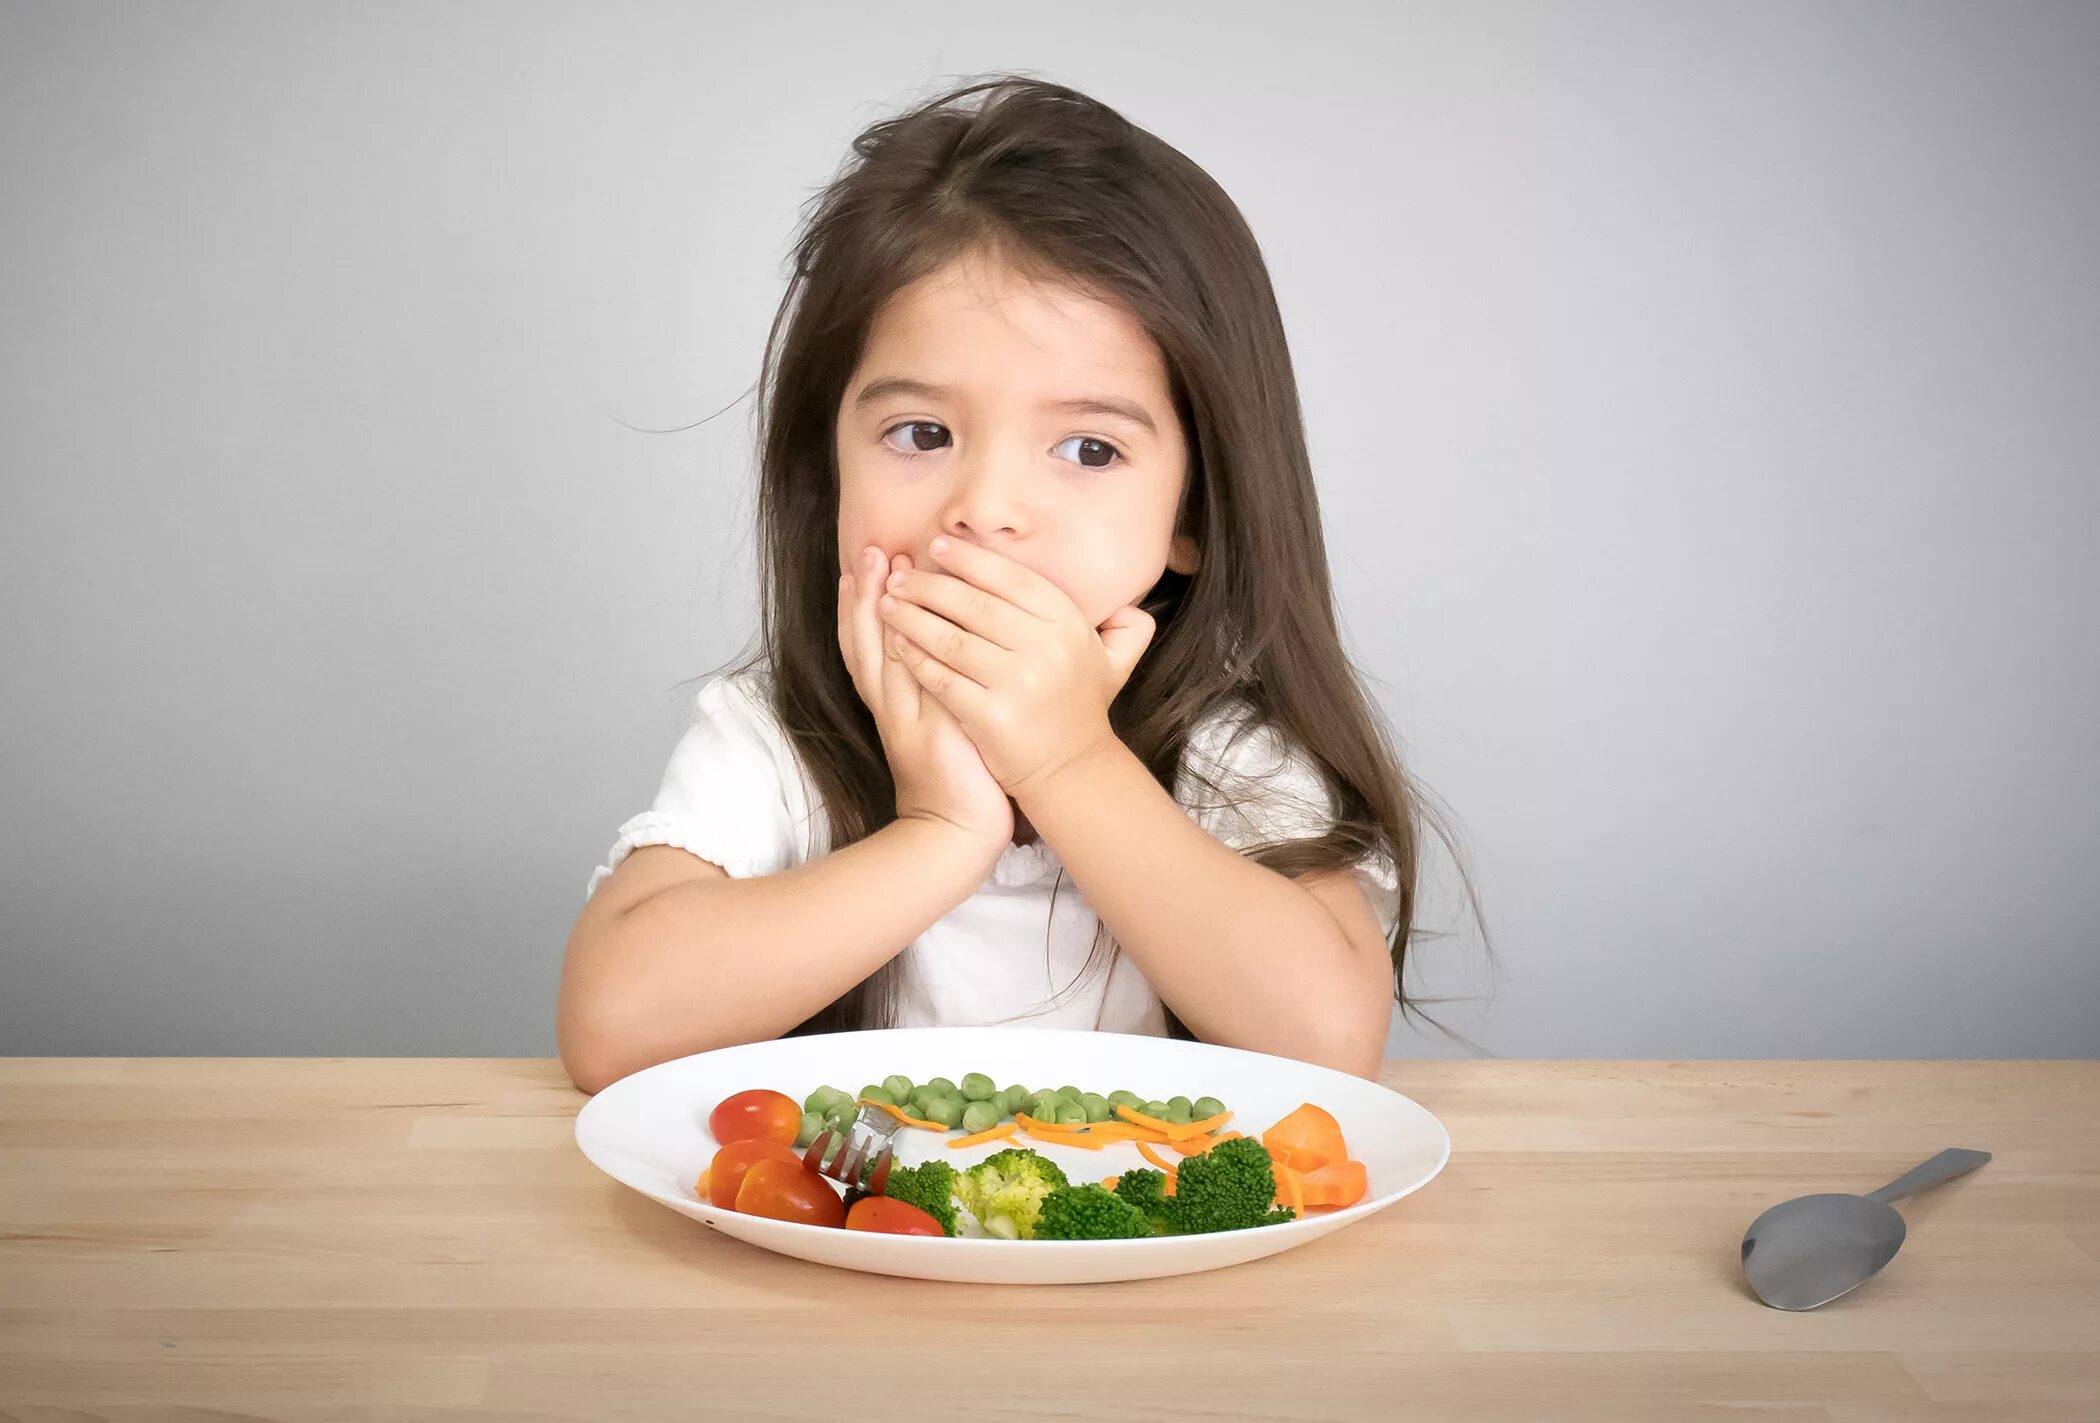 Неприятного аппетита. Еда для детей. Нарушение аппетита у детей. Питание детей. Детская диета.